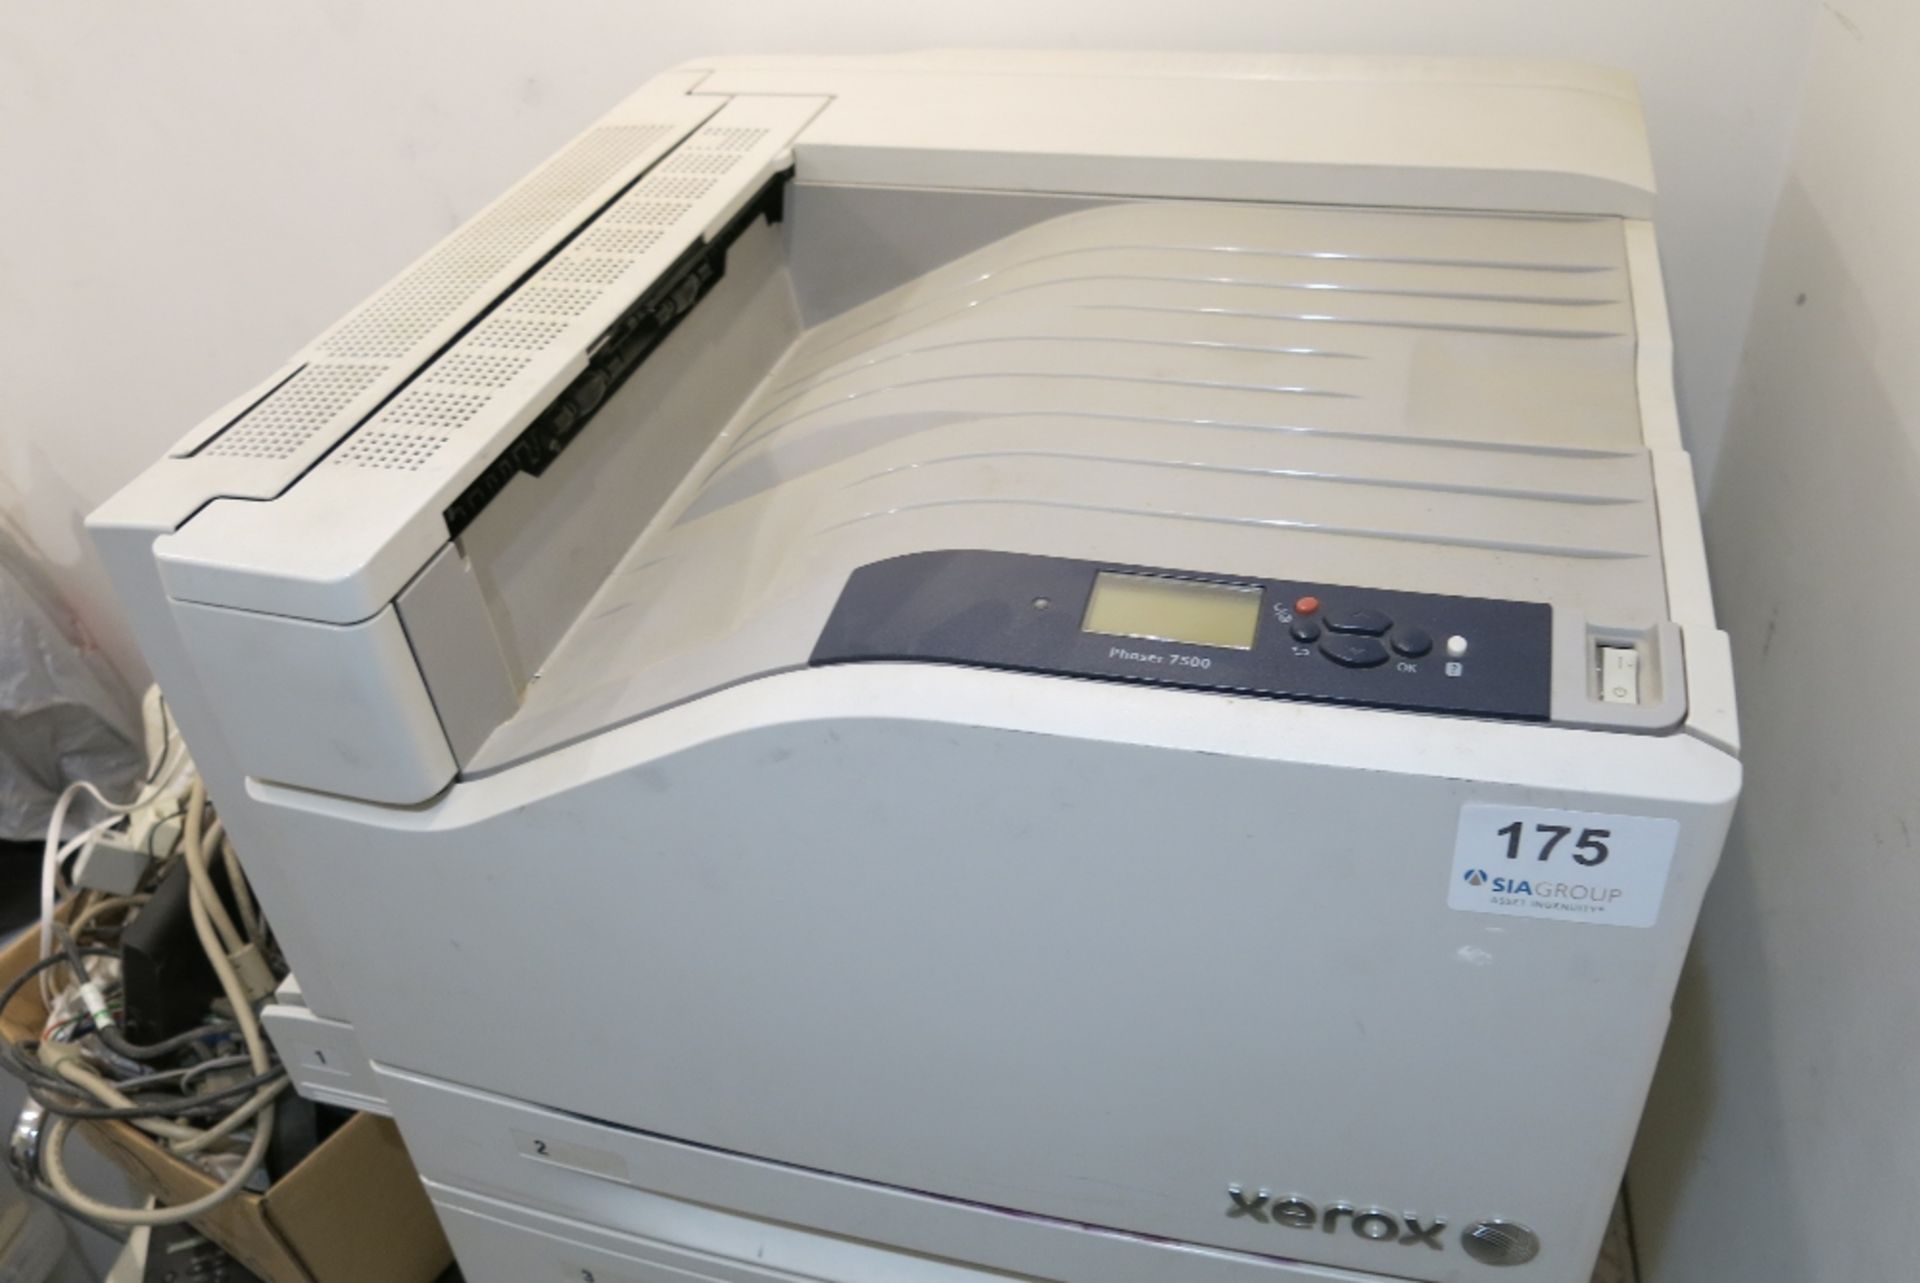 Xerox Phaser 7500 printer - Image 2 of 2